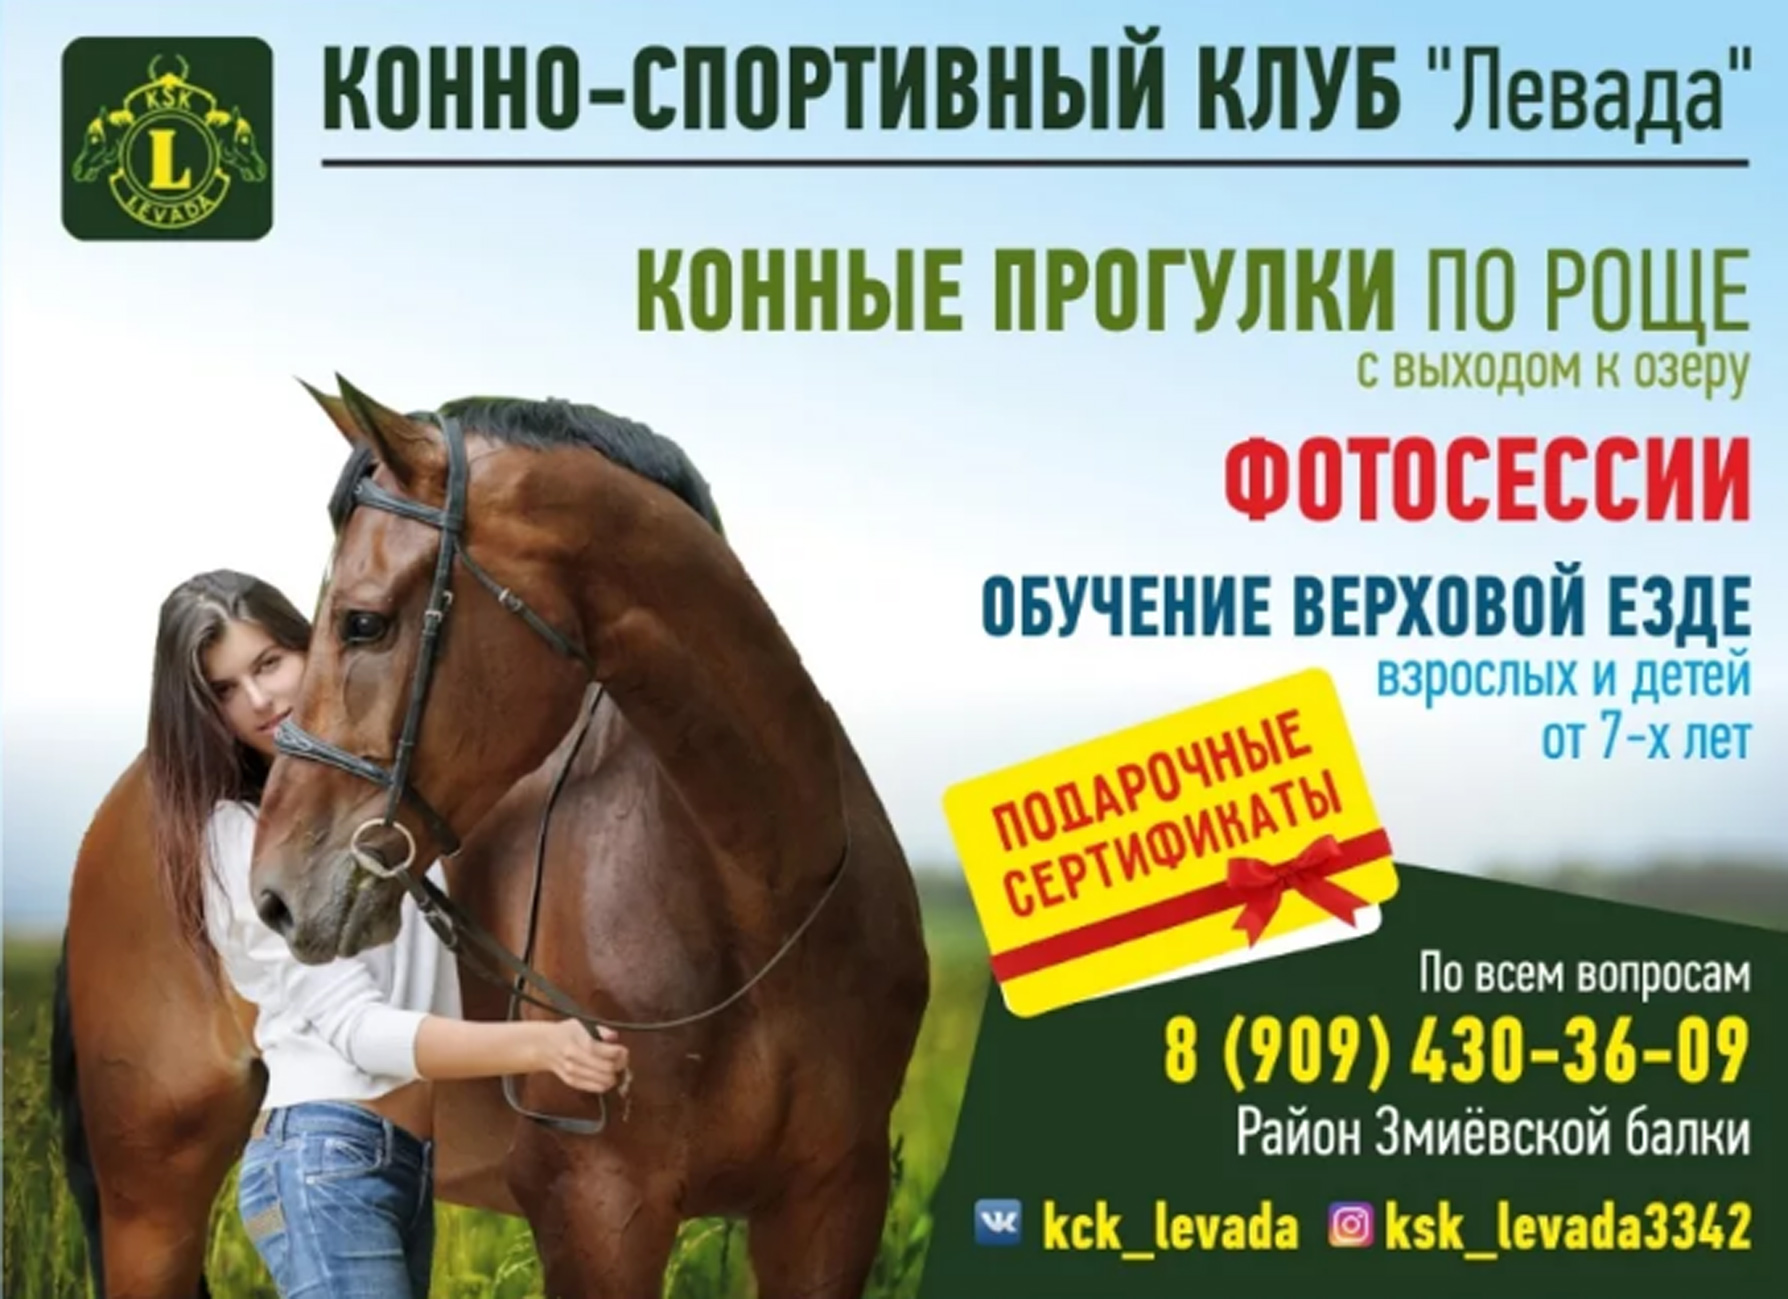 Кск скидки. Реклама конного клуба. Конные прогулки реклама. Реклама конного спорта. Конно-спортивный клуб реклама.